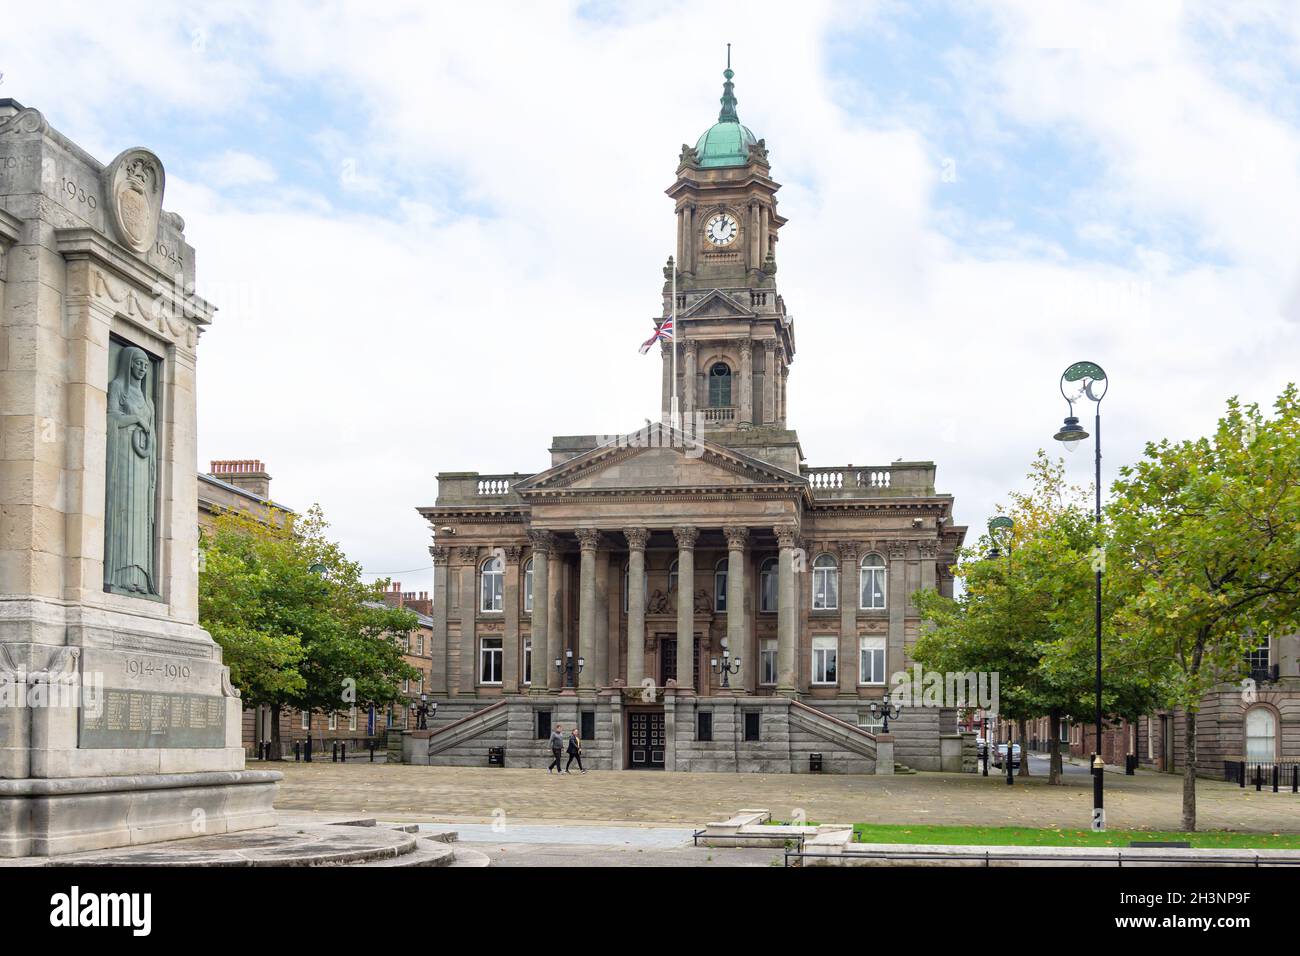 Rathaus von Birkenhead (Ratsbüros), Hamilton Square, Birkenhead, Metropolitan Borough of Wirral, Merseyside, England, Vereinigtes Königreich Stockfoto